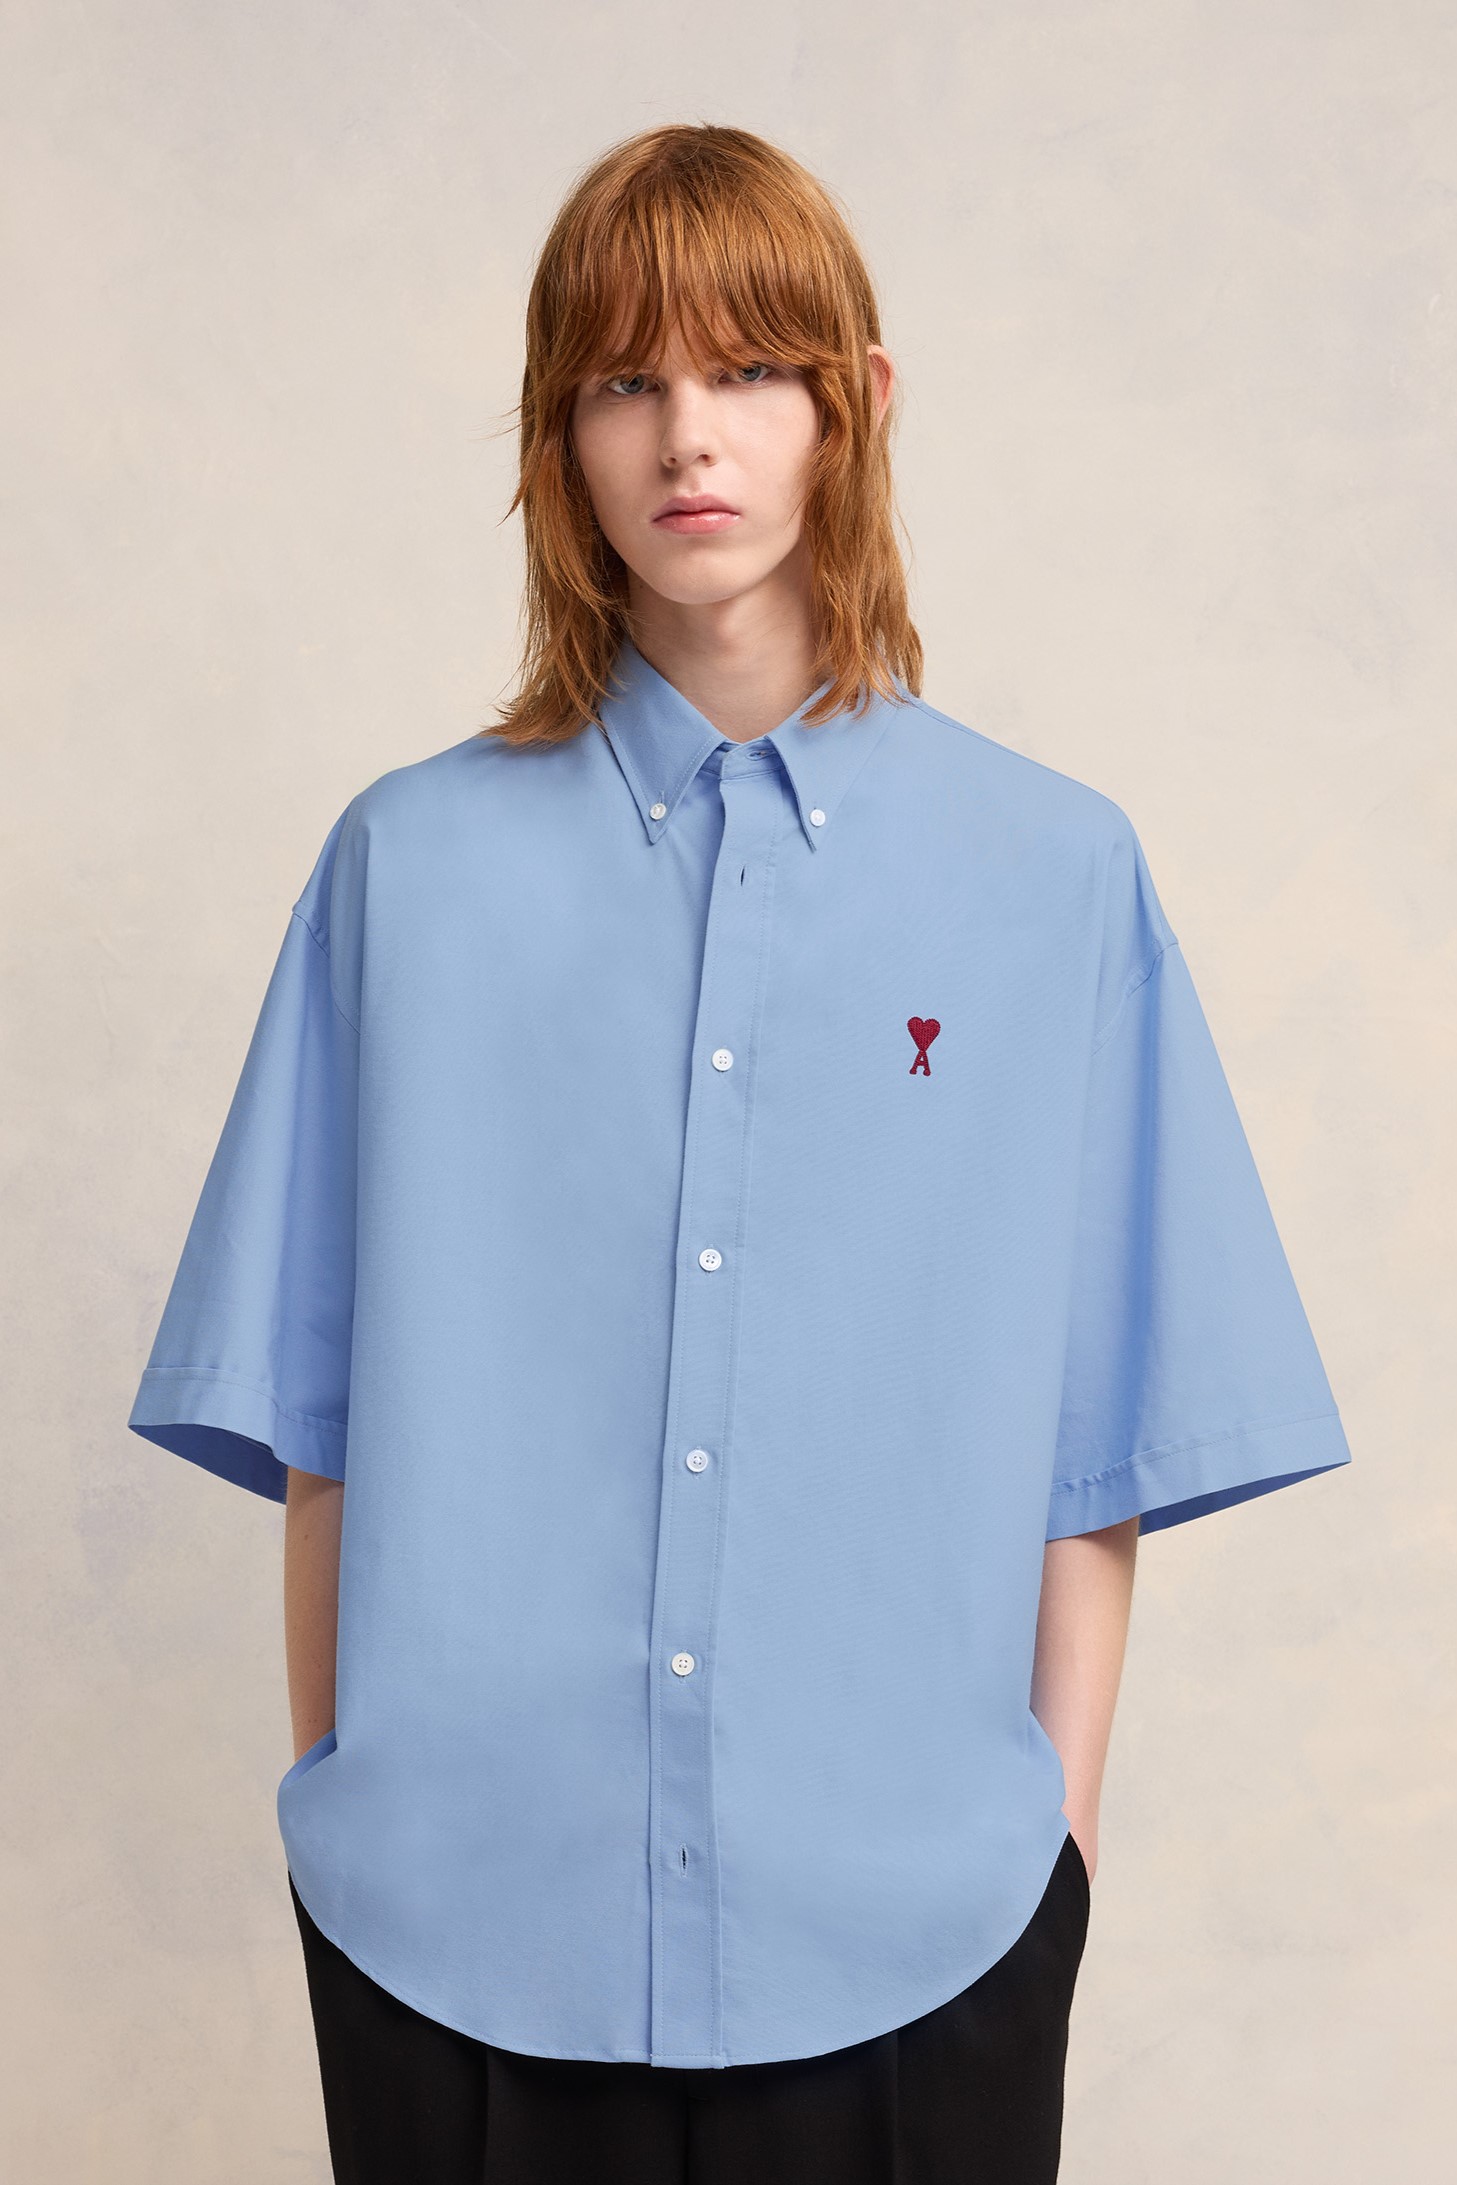 AMI PARIS de Coeur Boxy Fit Short Sleeve Shirt in Cashmere Blue M